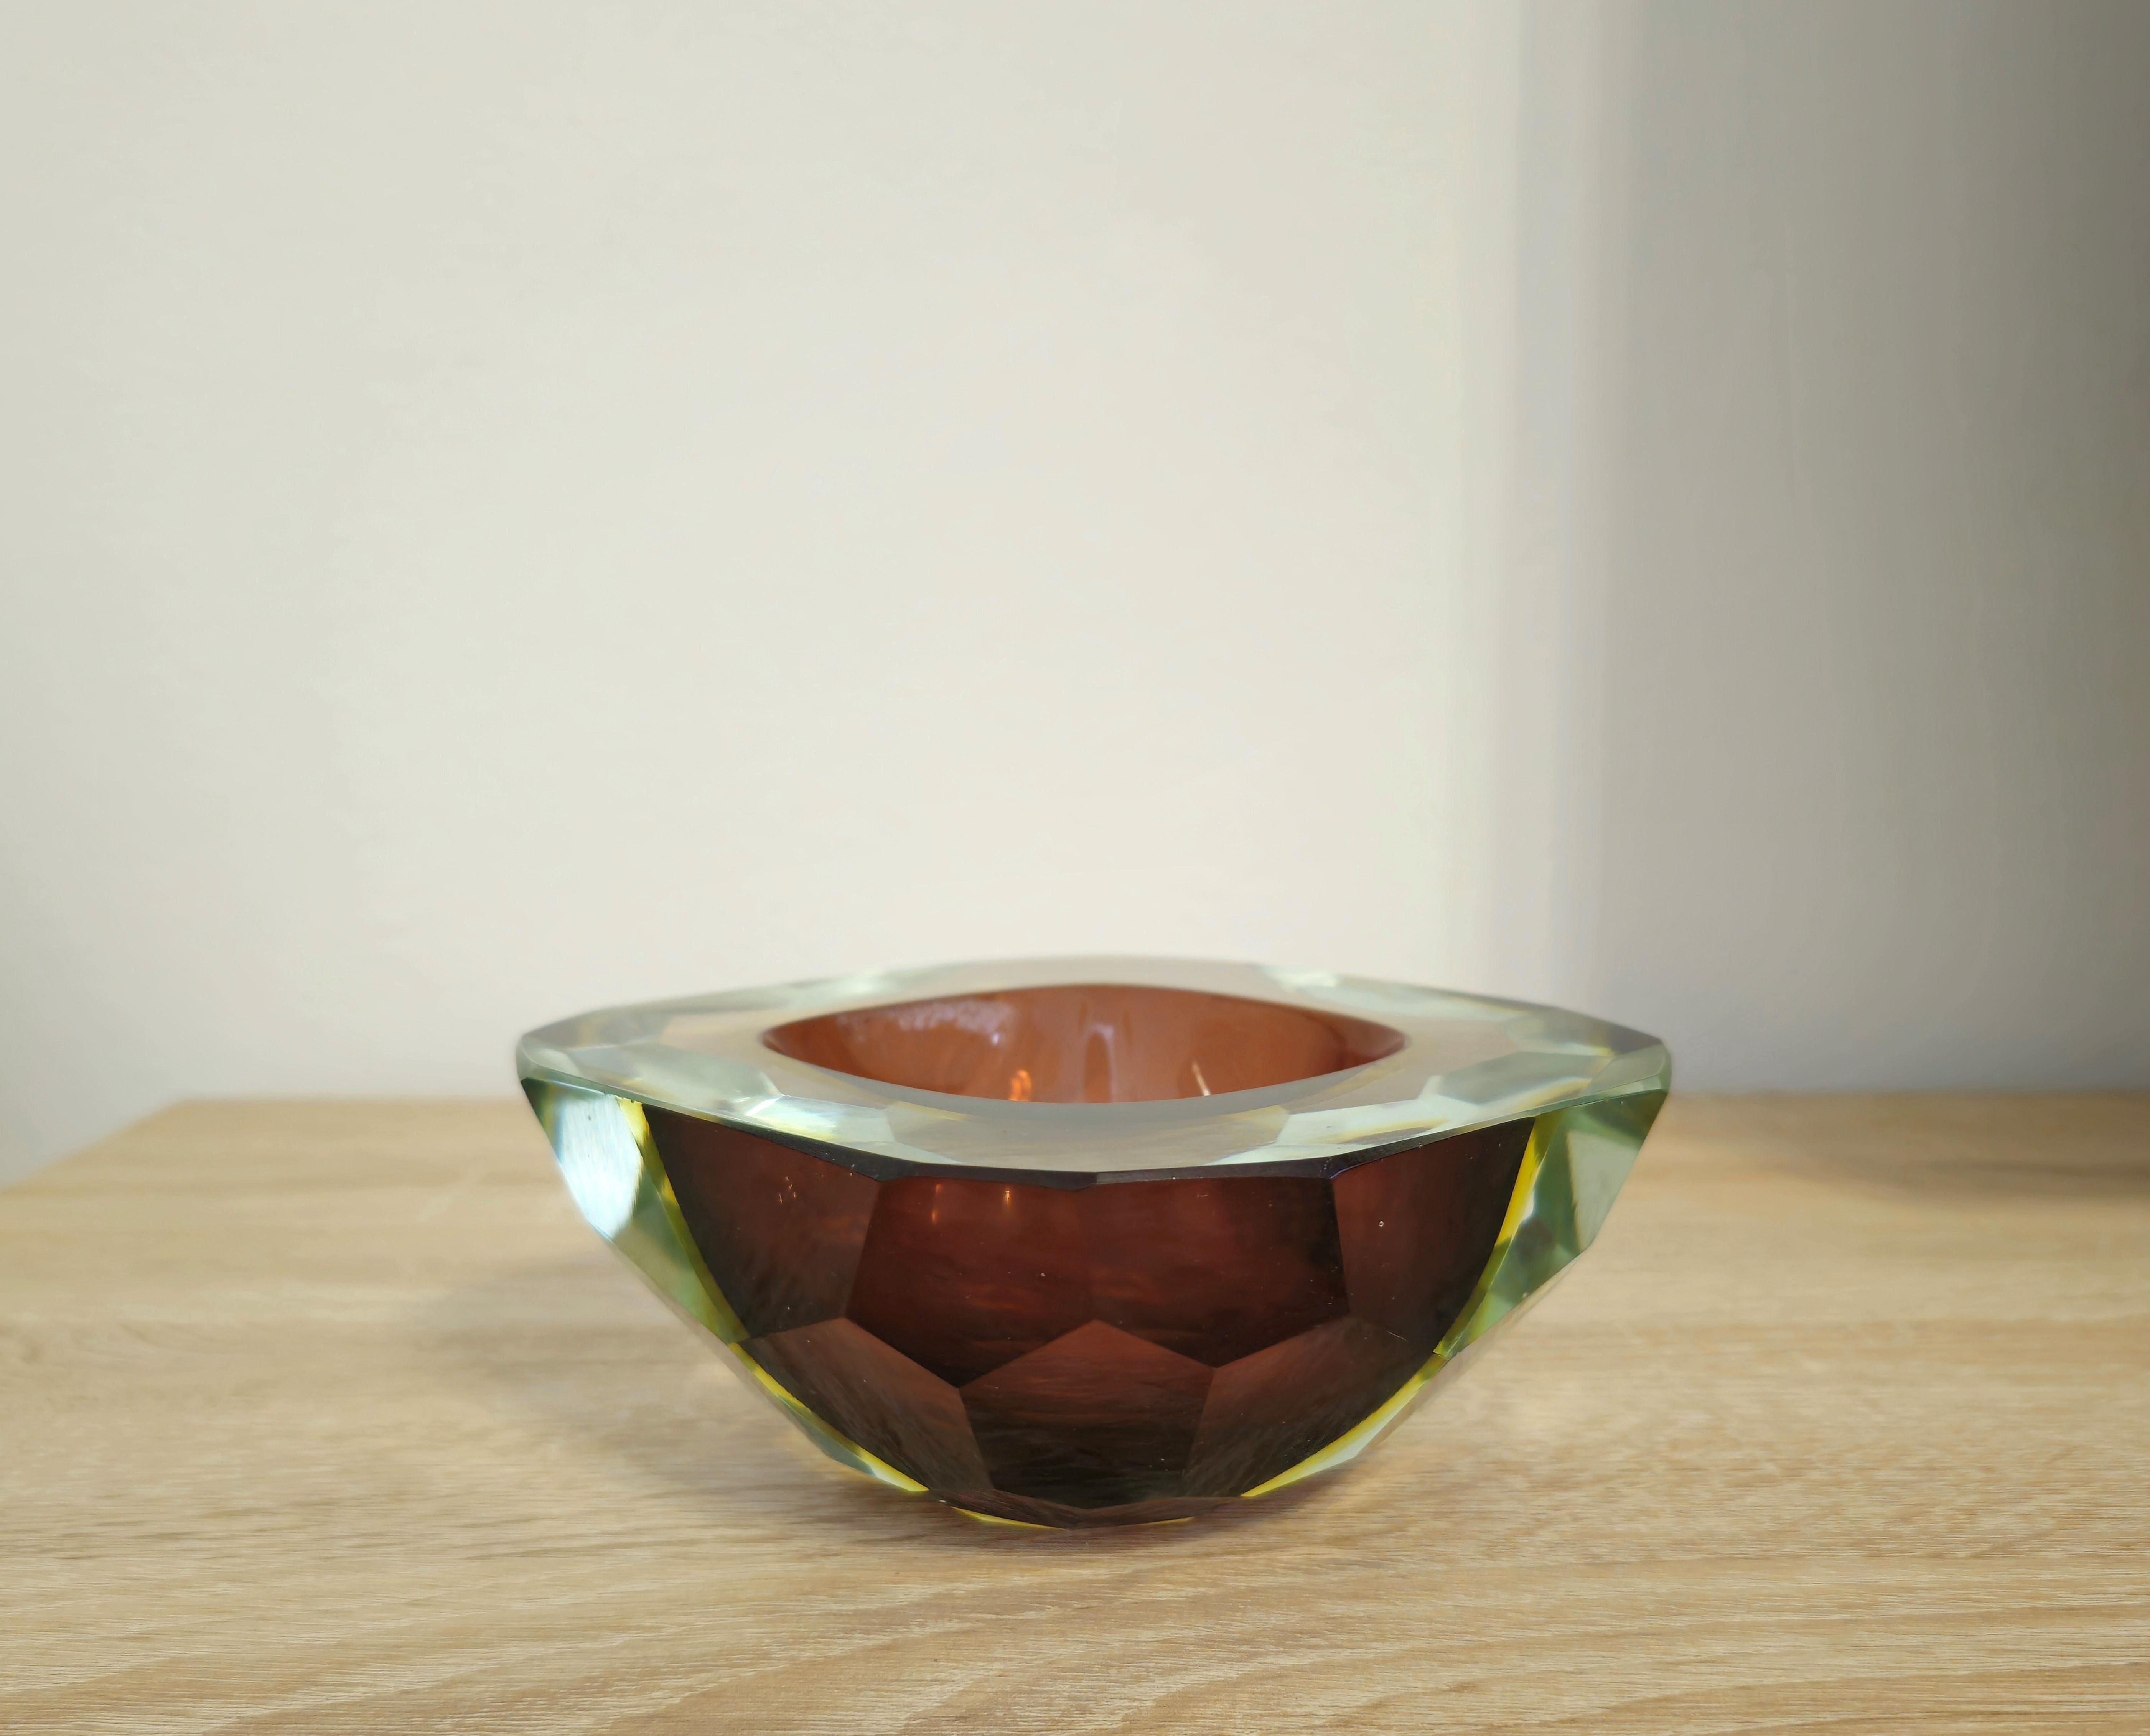 20th Century Decorative Object Vide-Poche Bowl Flavio Poli Murano Glass Midcentury Italy 1960 For Sale